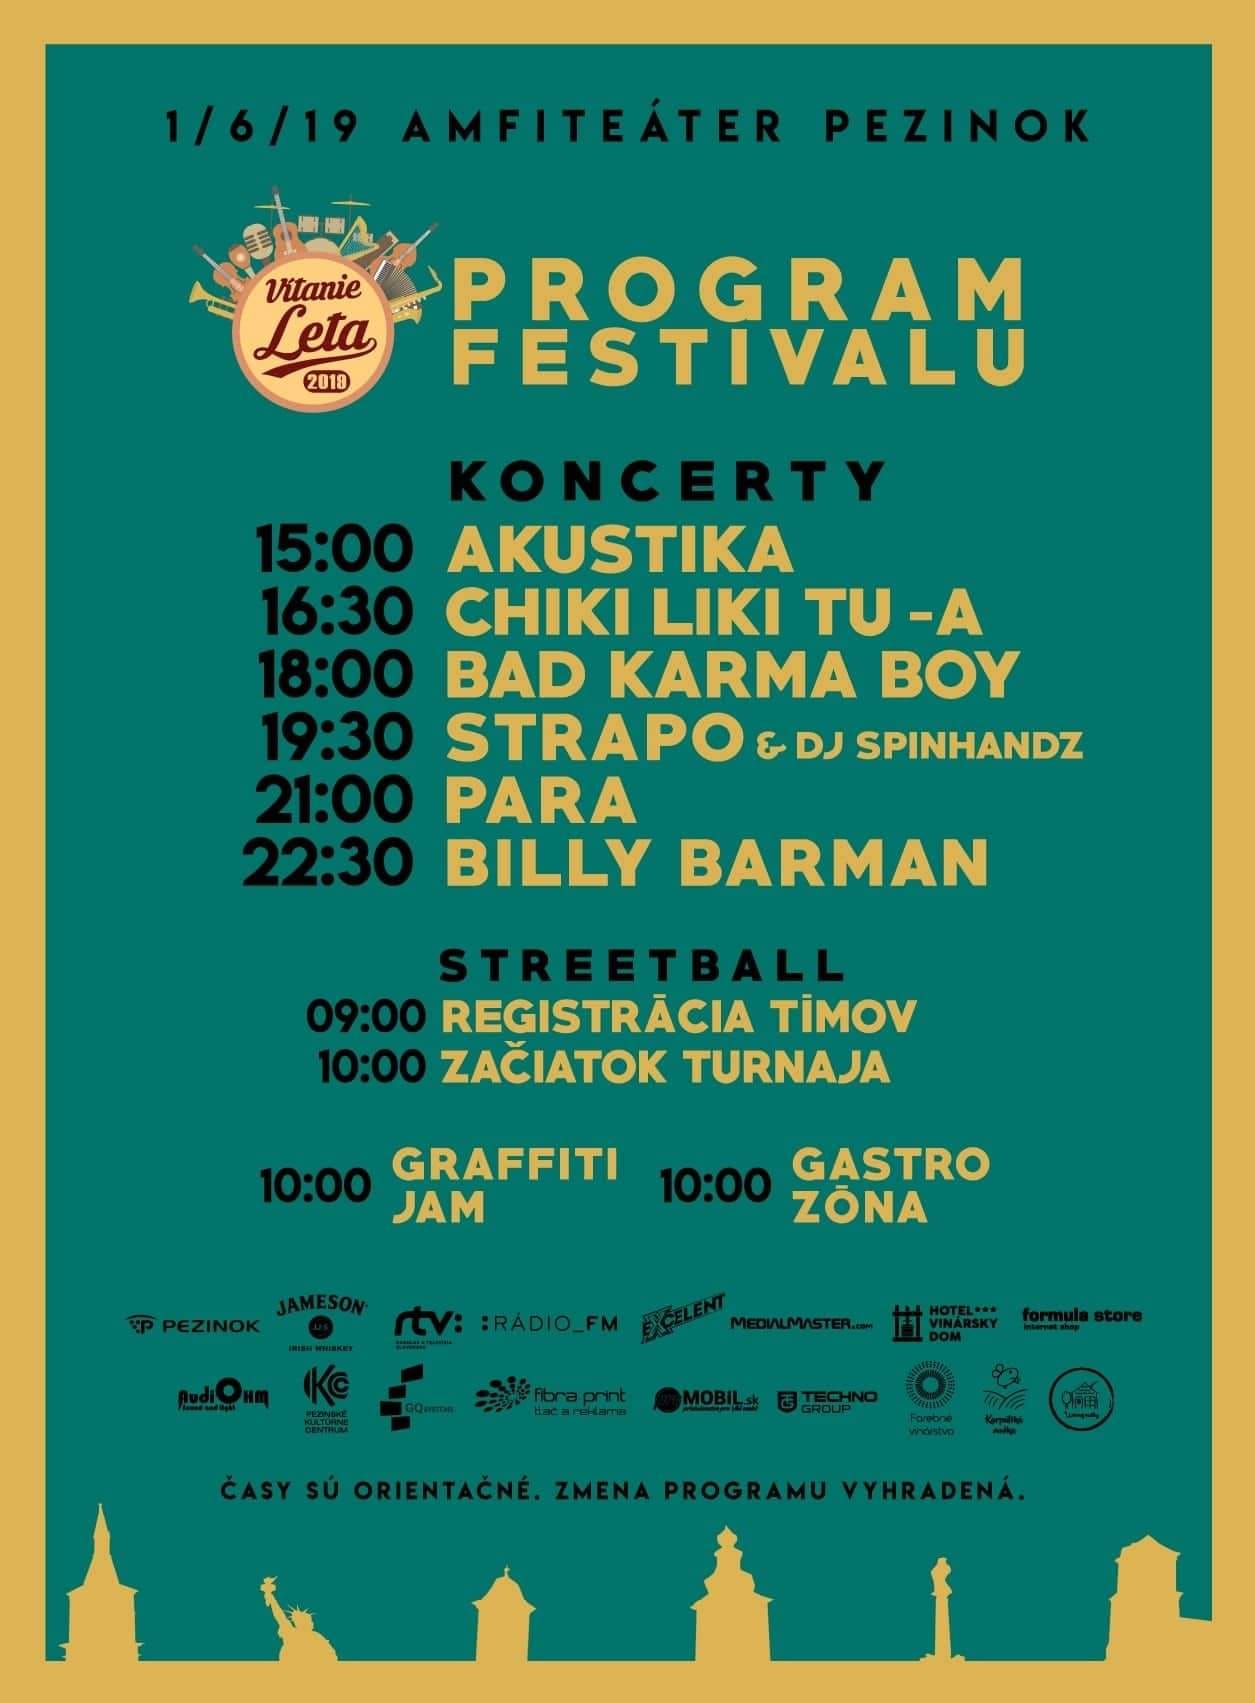 Vítanie leta 2019 program festivalu Vítanie leta 2019